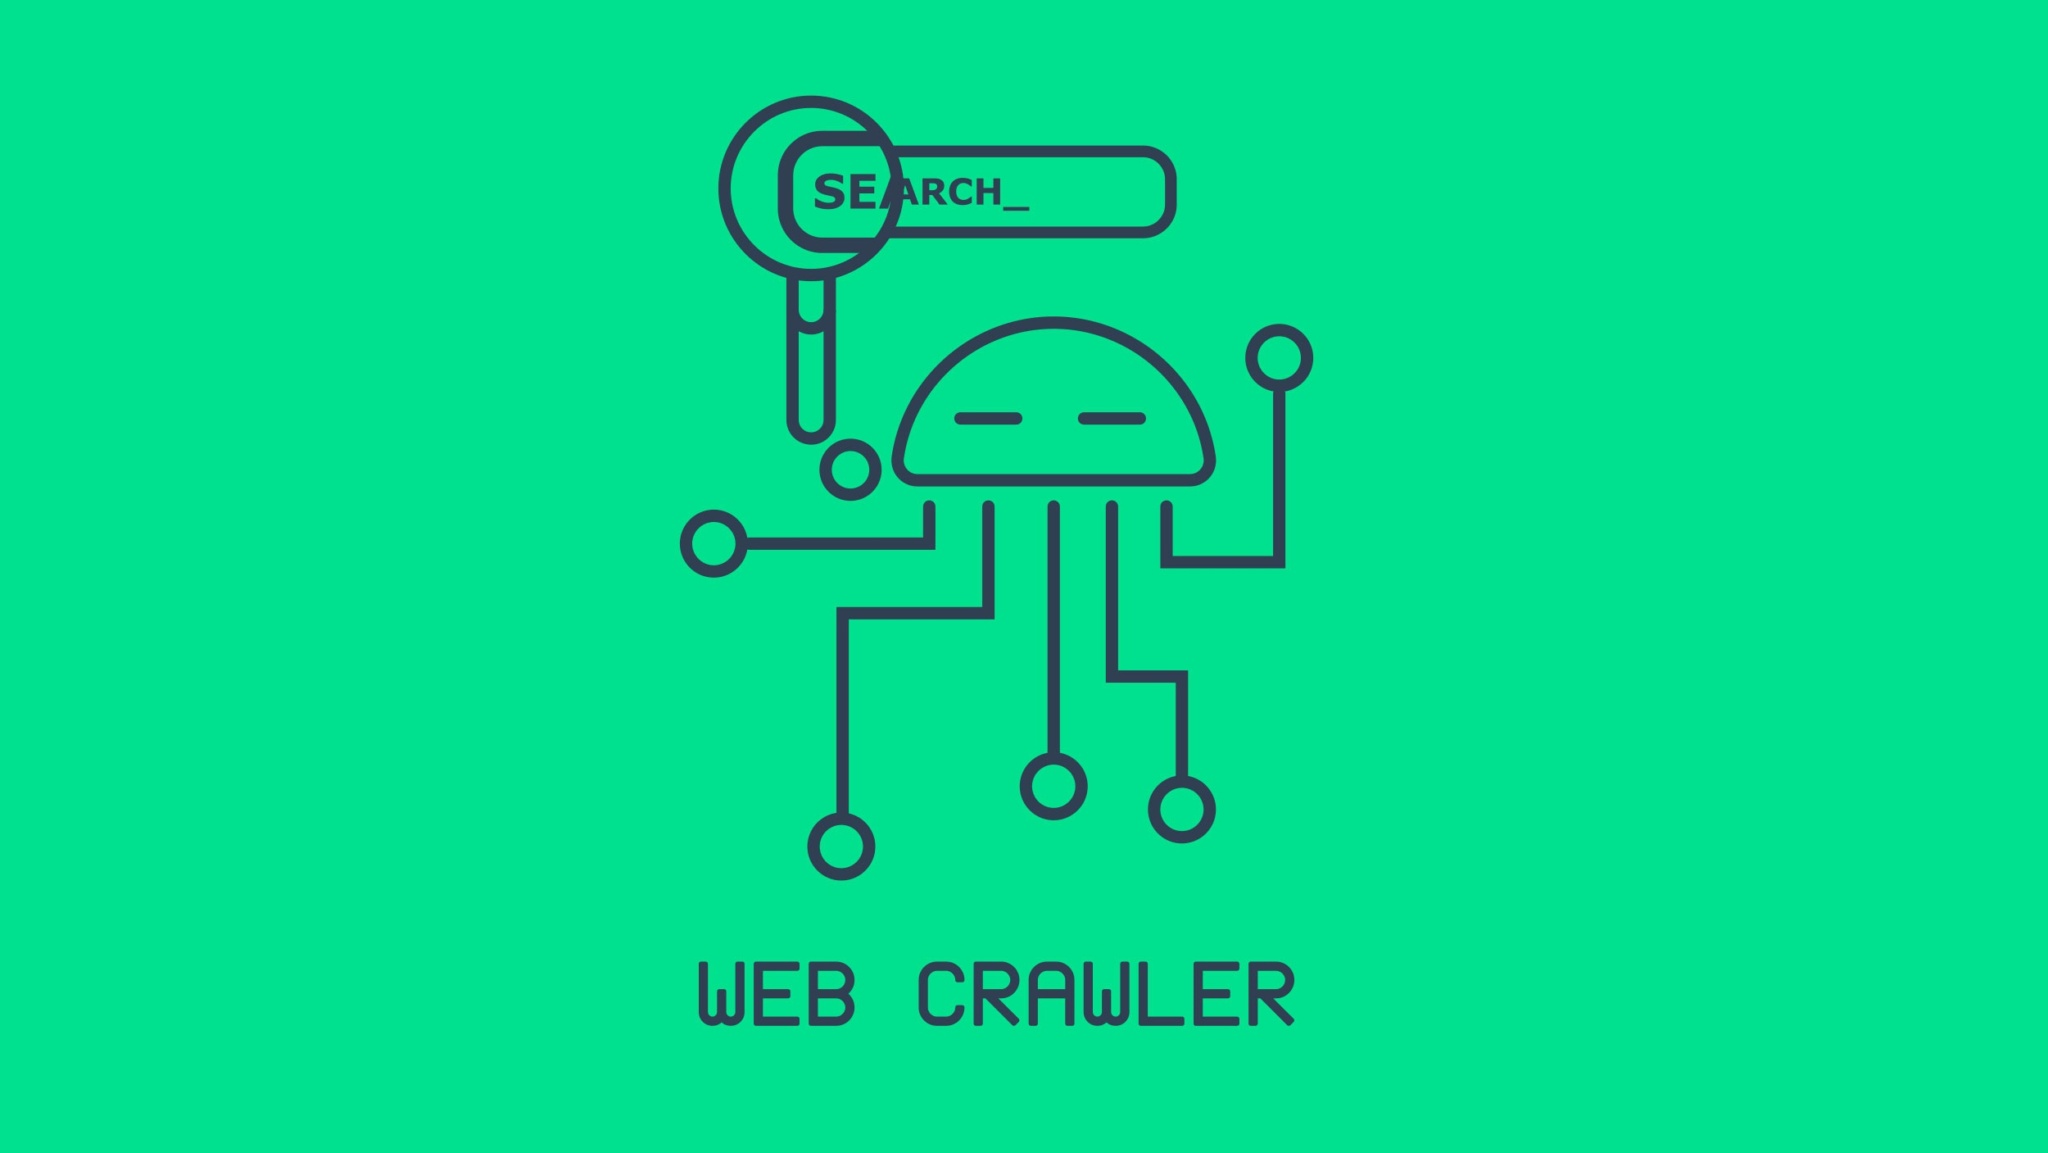 Illustration eines Webcrawlers von Google der nach einem Relaunch über die Website crawlt